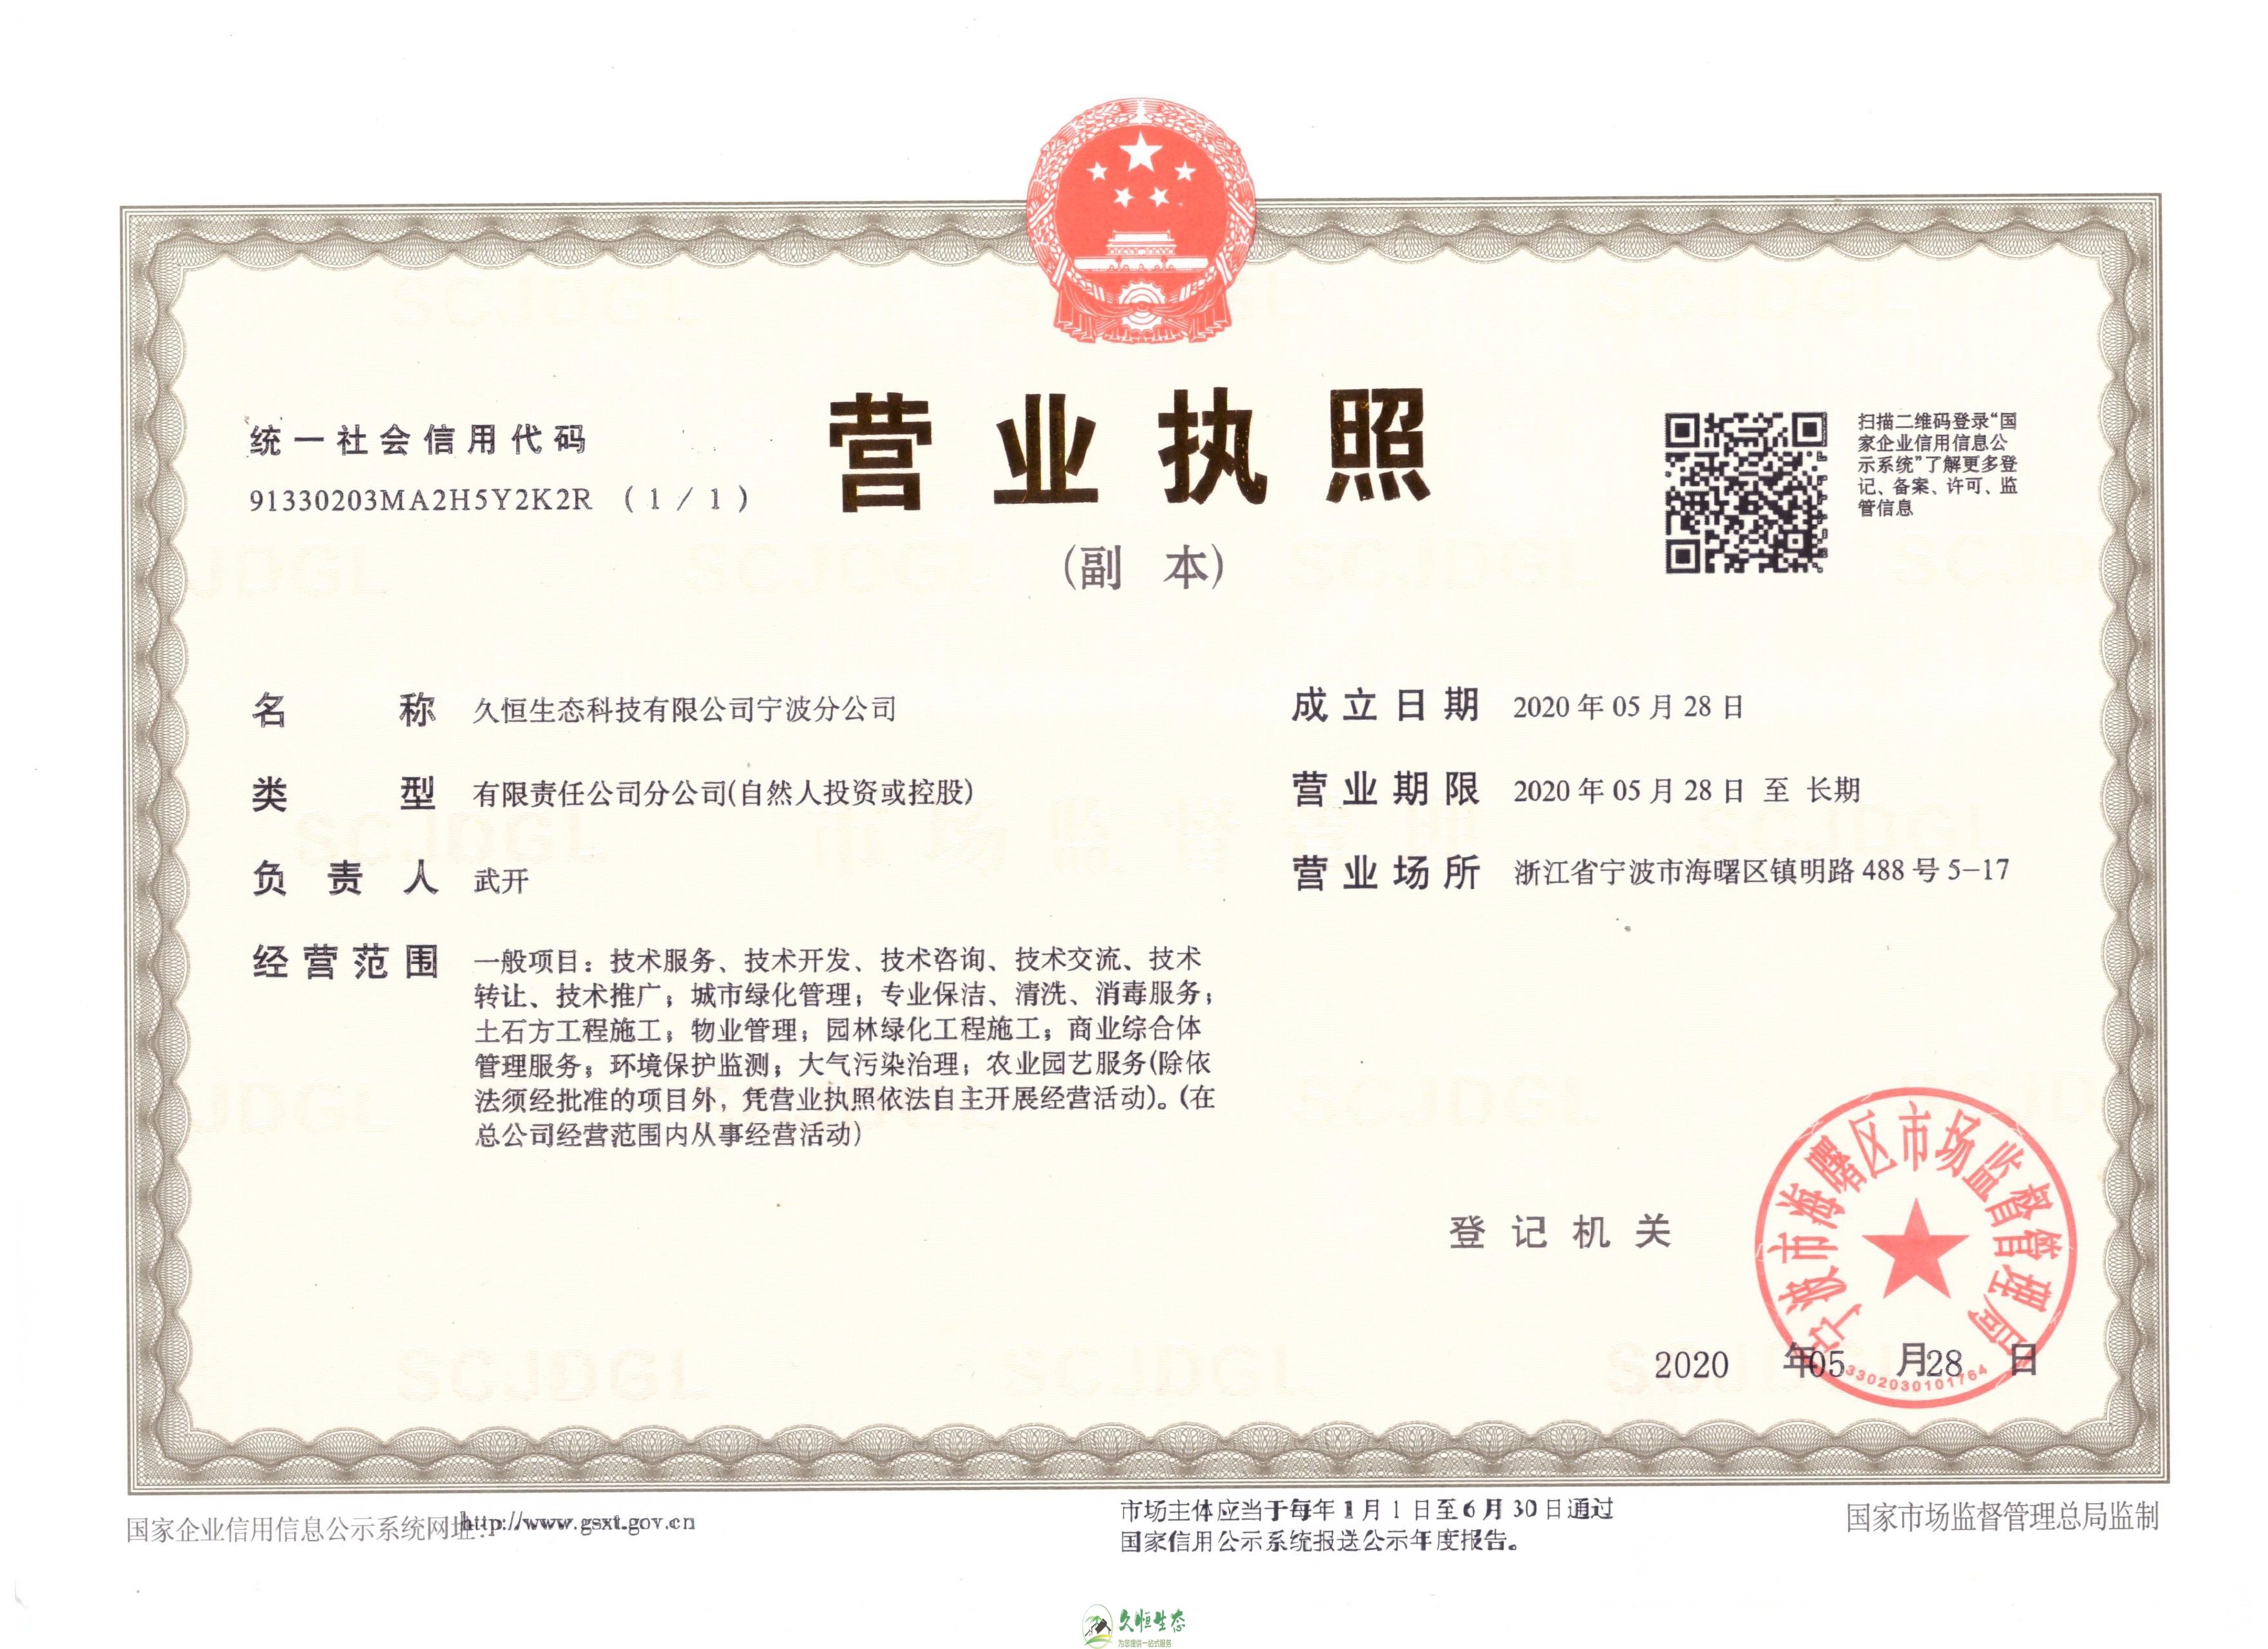 无锡新吴久恒生态宁波分公司2020年5月28日成立